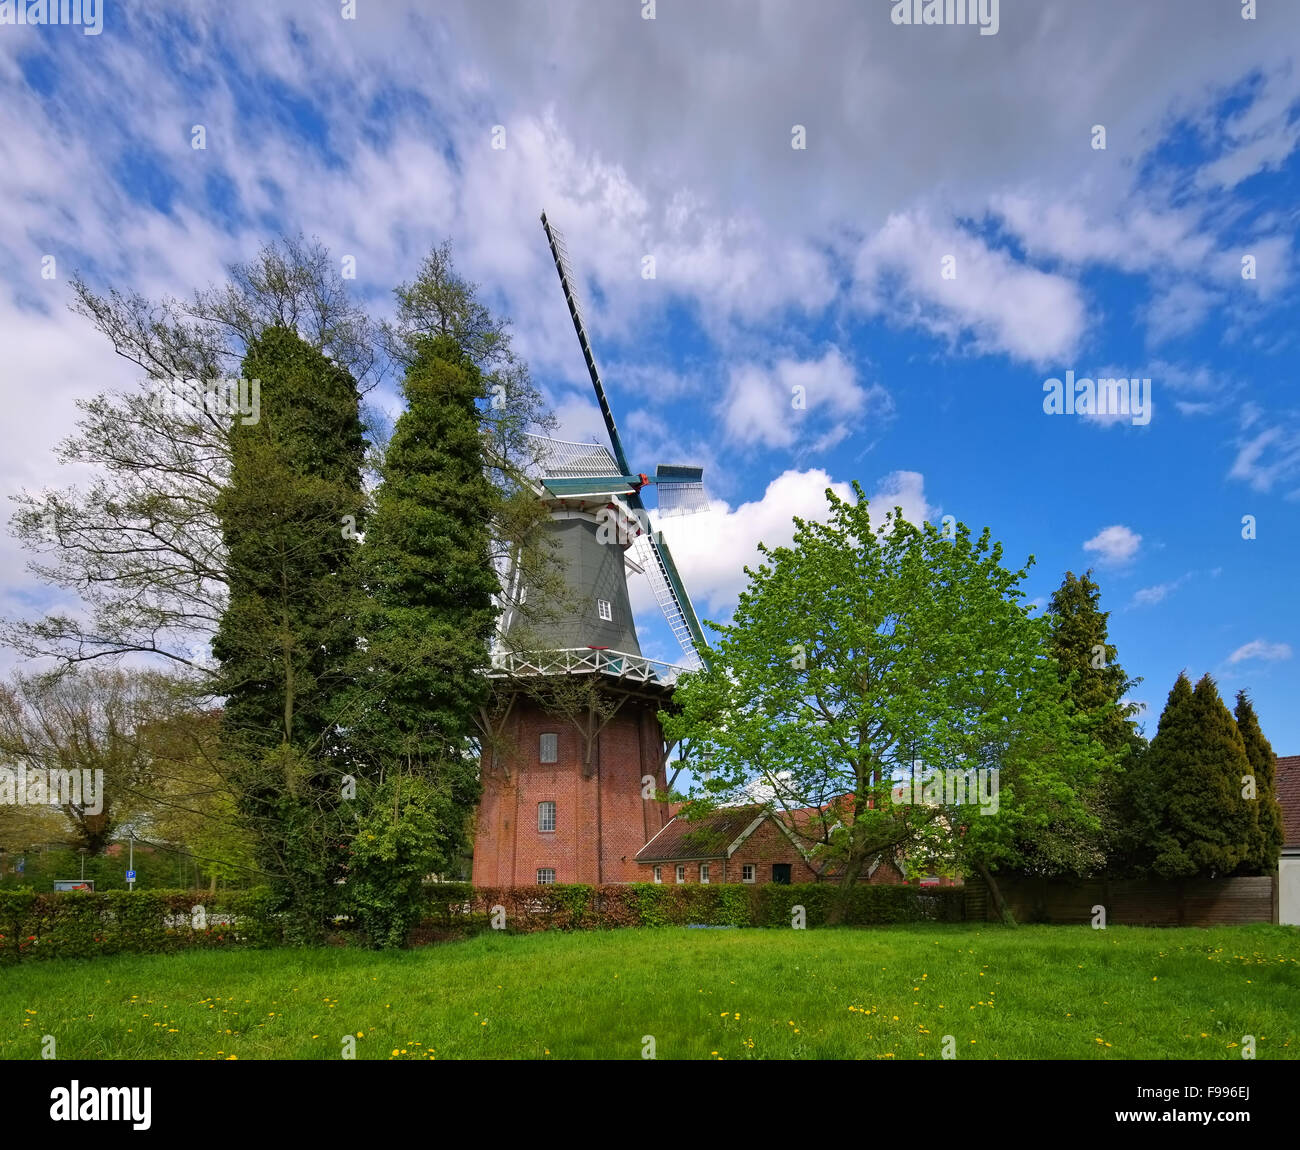 Papenburg Windmuehle - windmill Papenburg 02 Stock Photo